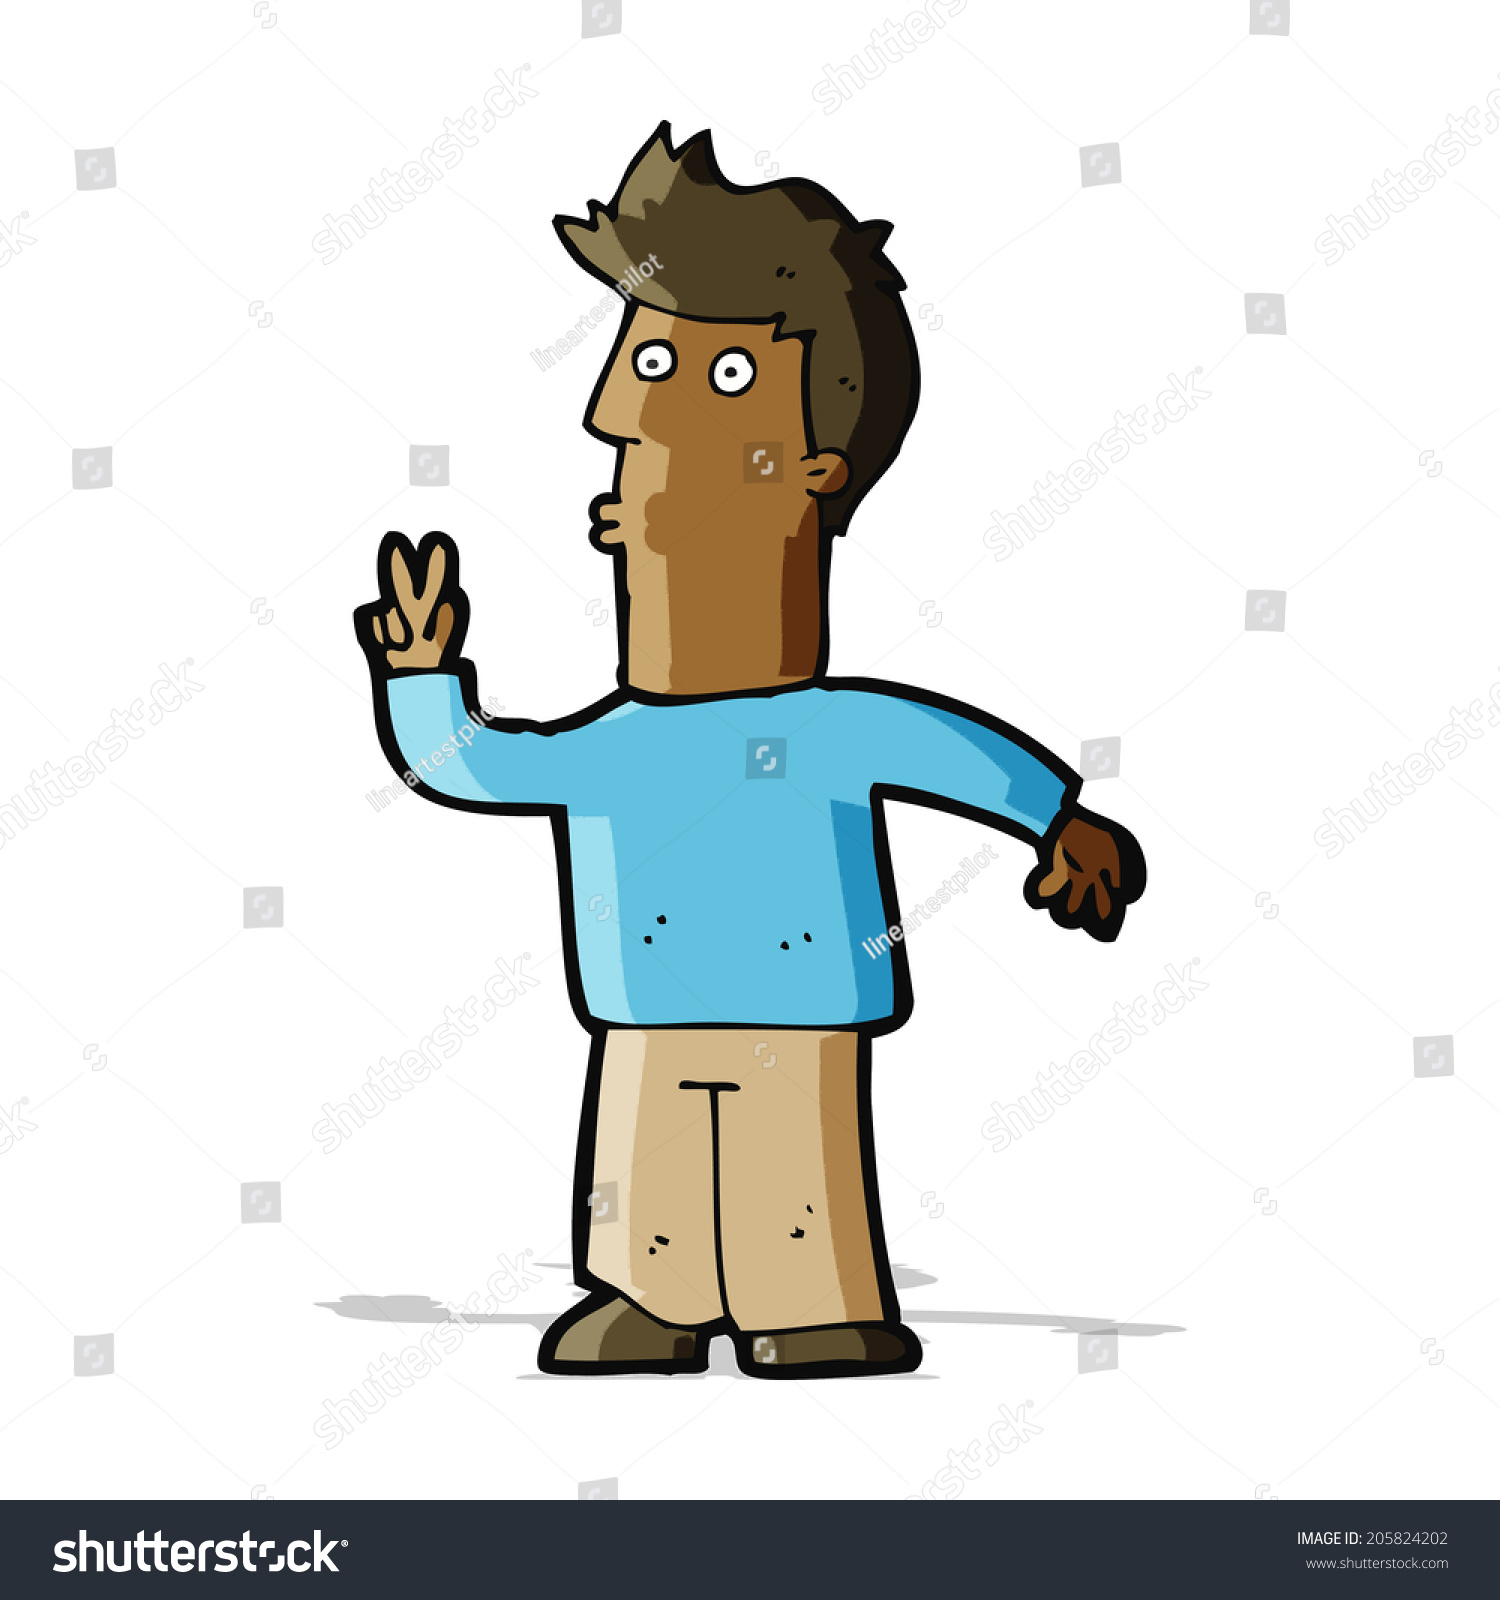 Cartoon Man Signaling Hand Stock Illustration 205824202 - Shutterstock